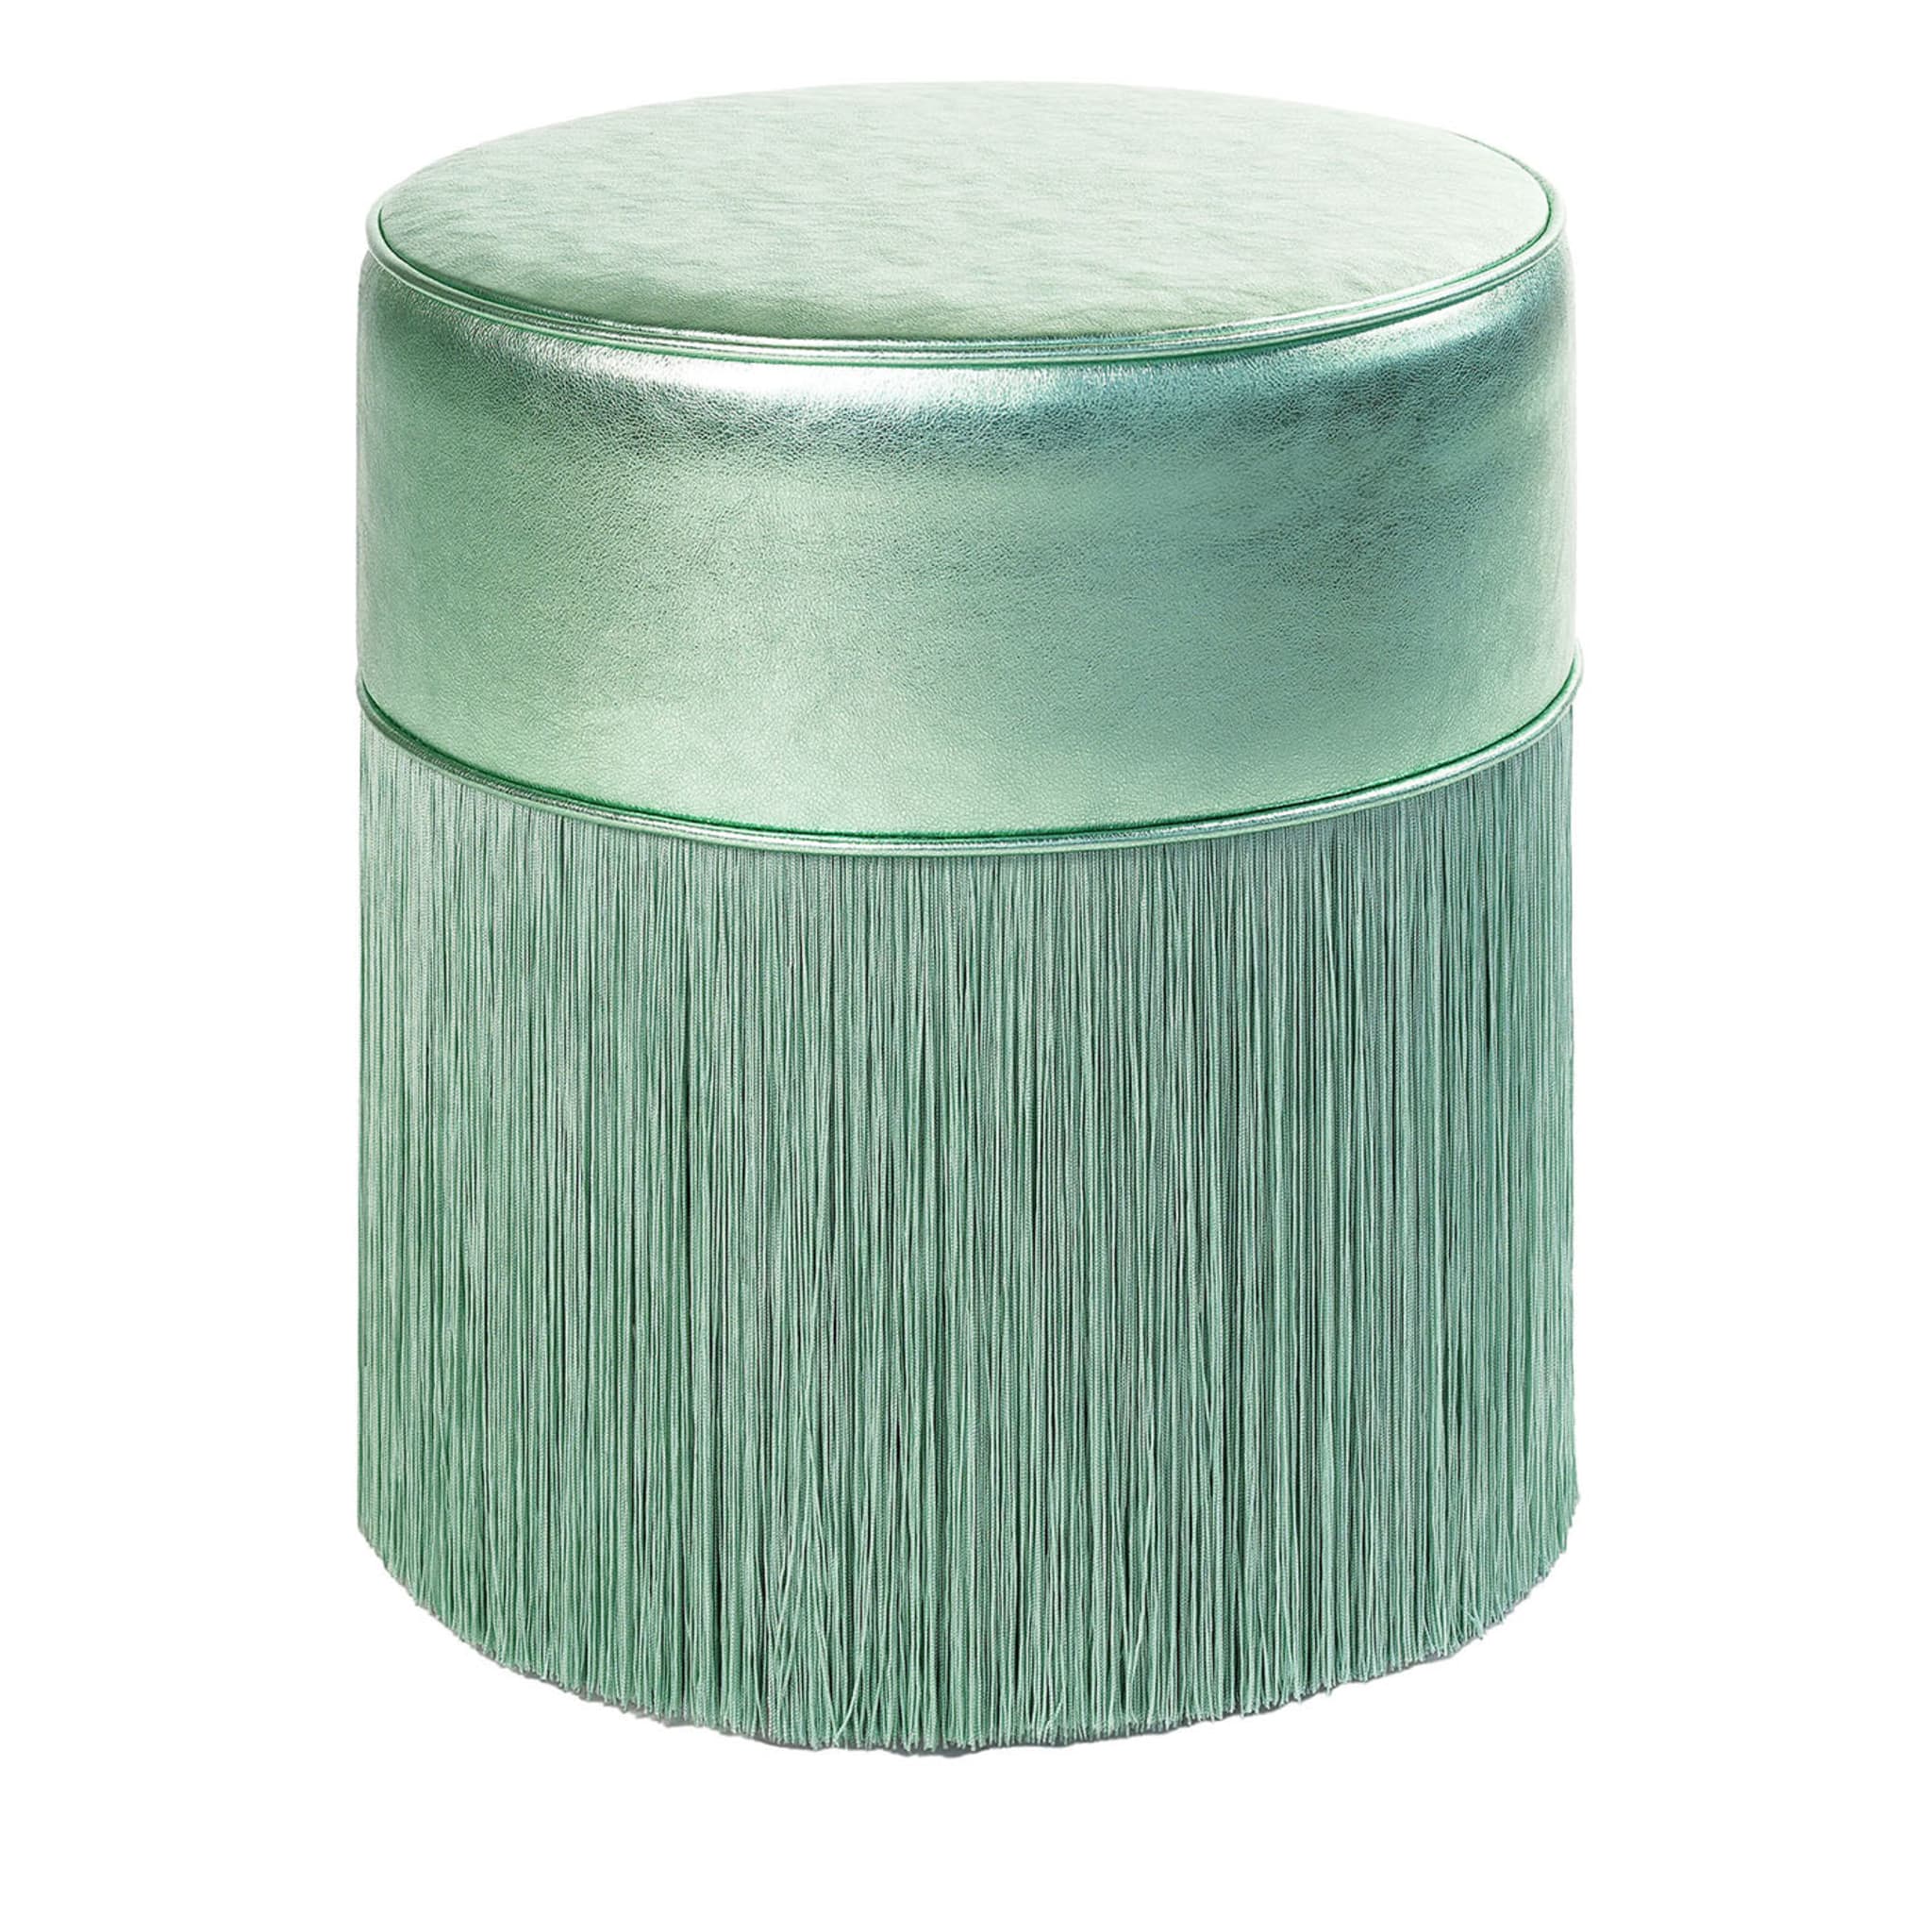 Pouf in pelle metallizzata verde chiaro #2 di Lorenza Bozzoli - Vista principale